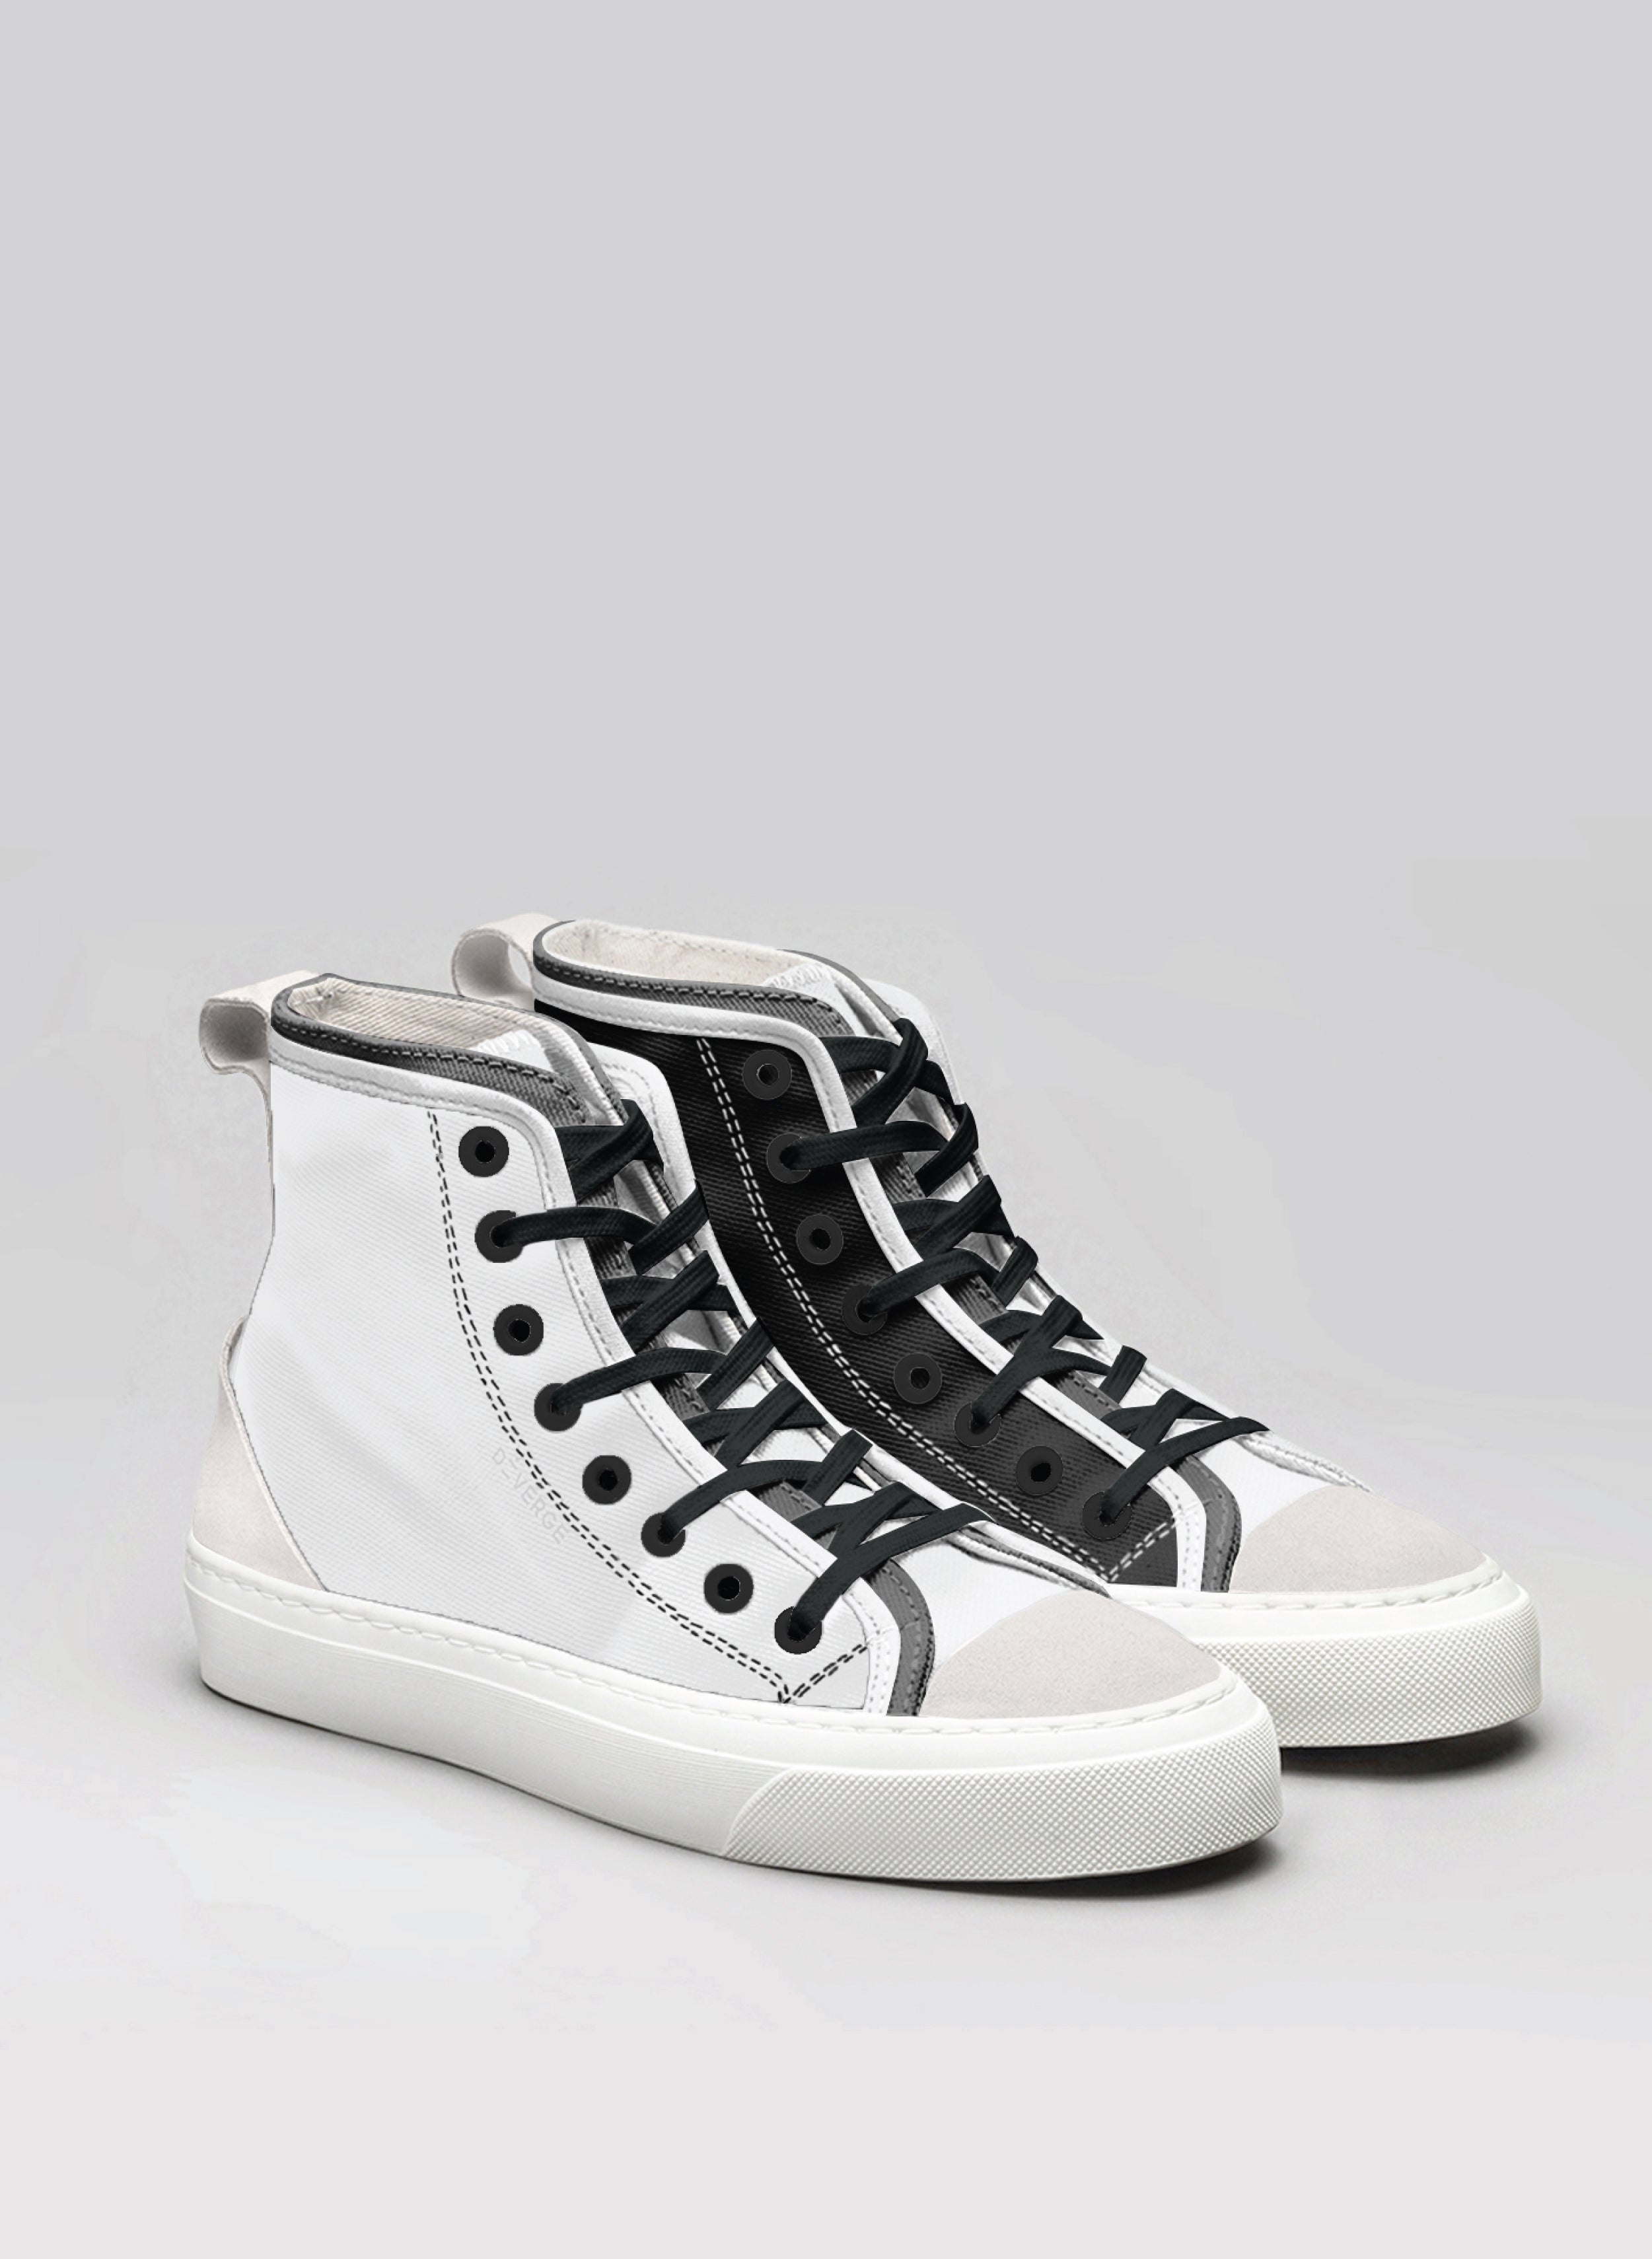 Ein schwarz-weißes High-Top Diverge sneakers , ein Paar Maßschuhe.